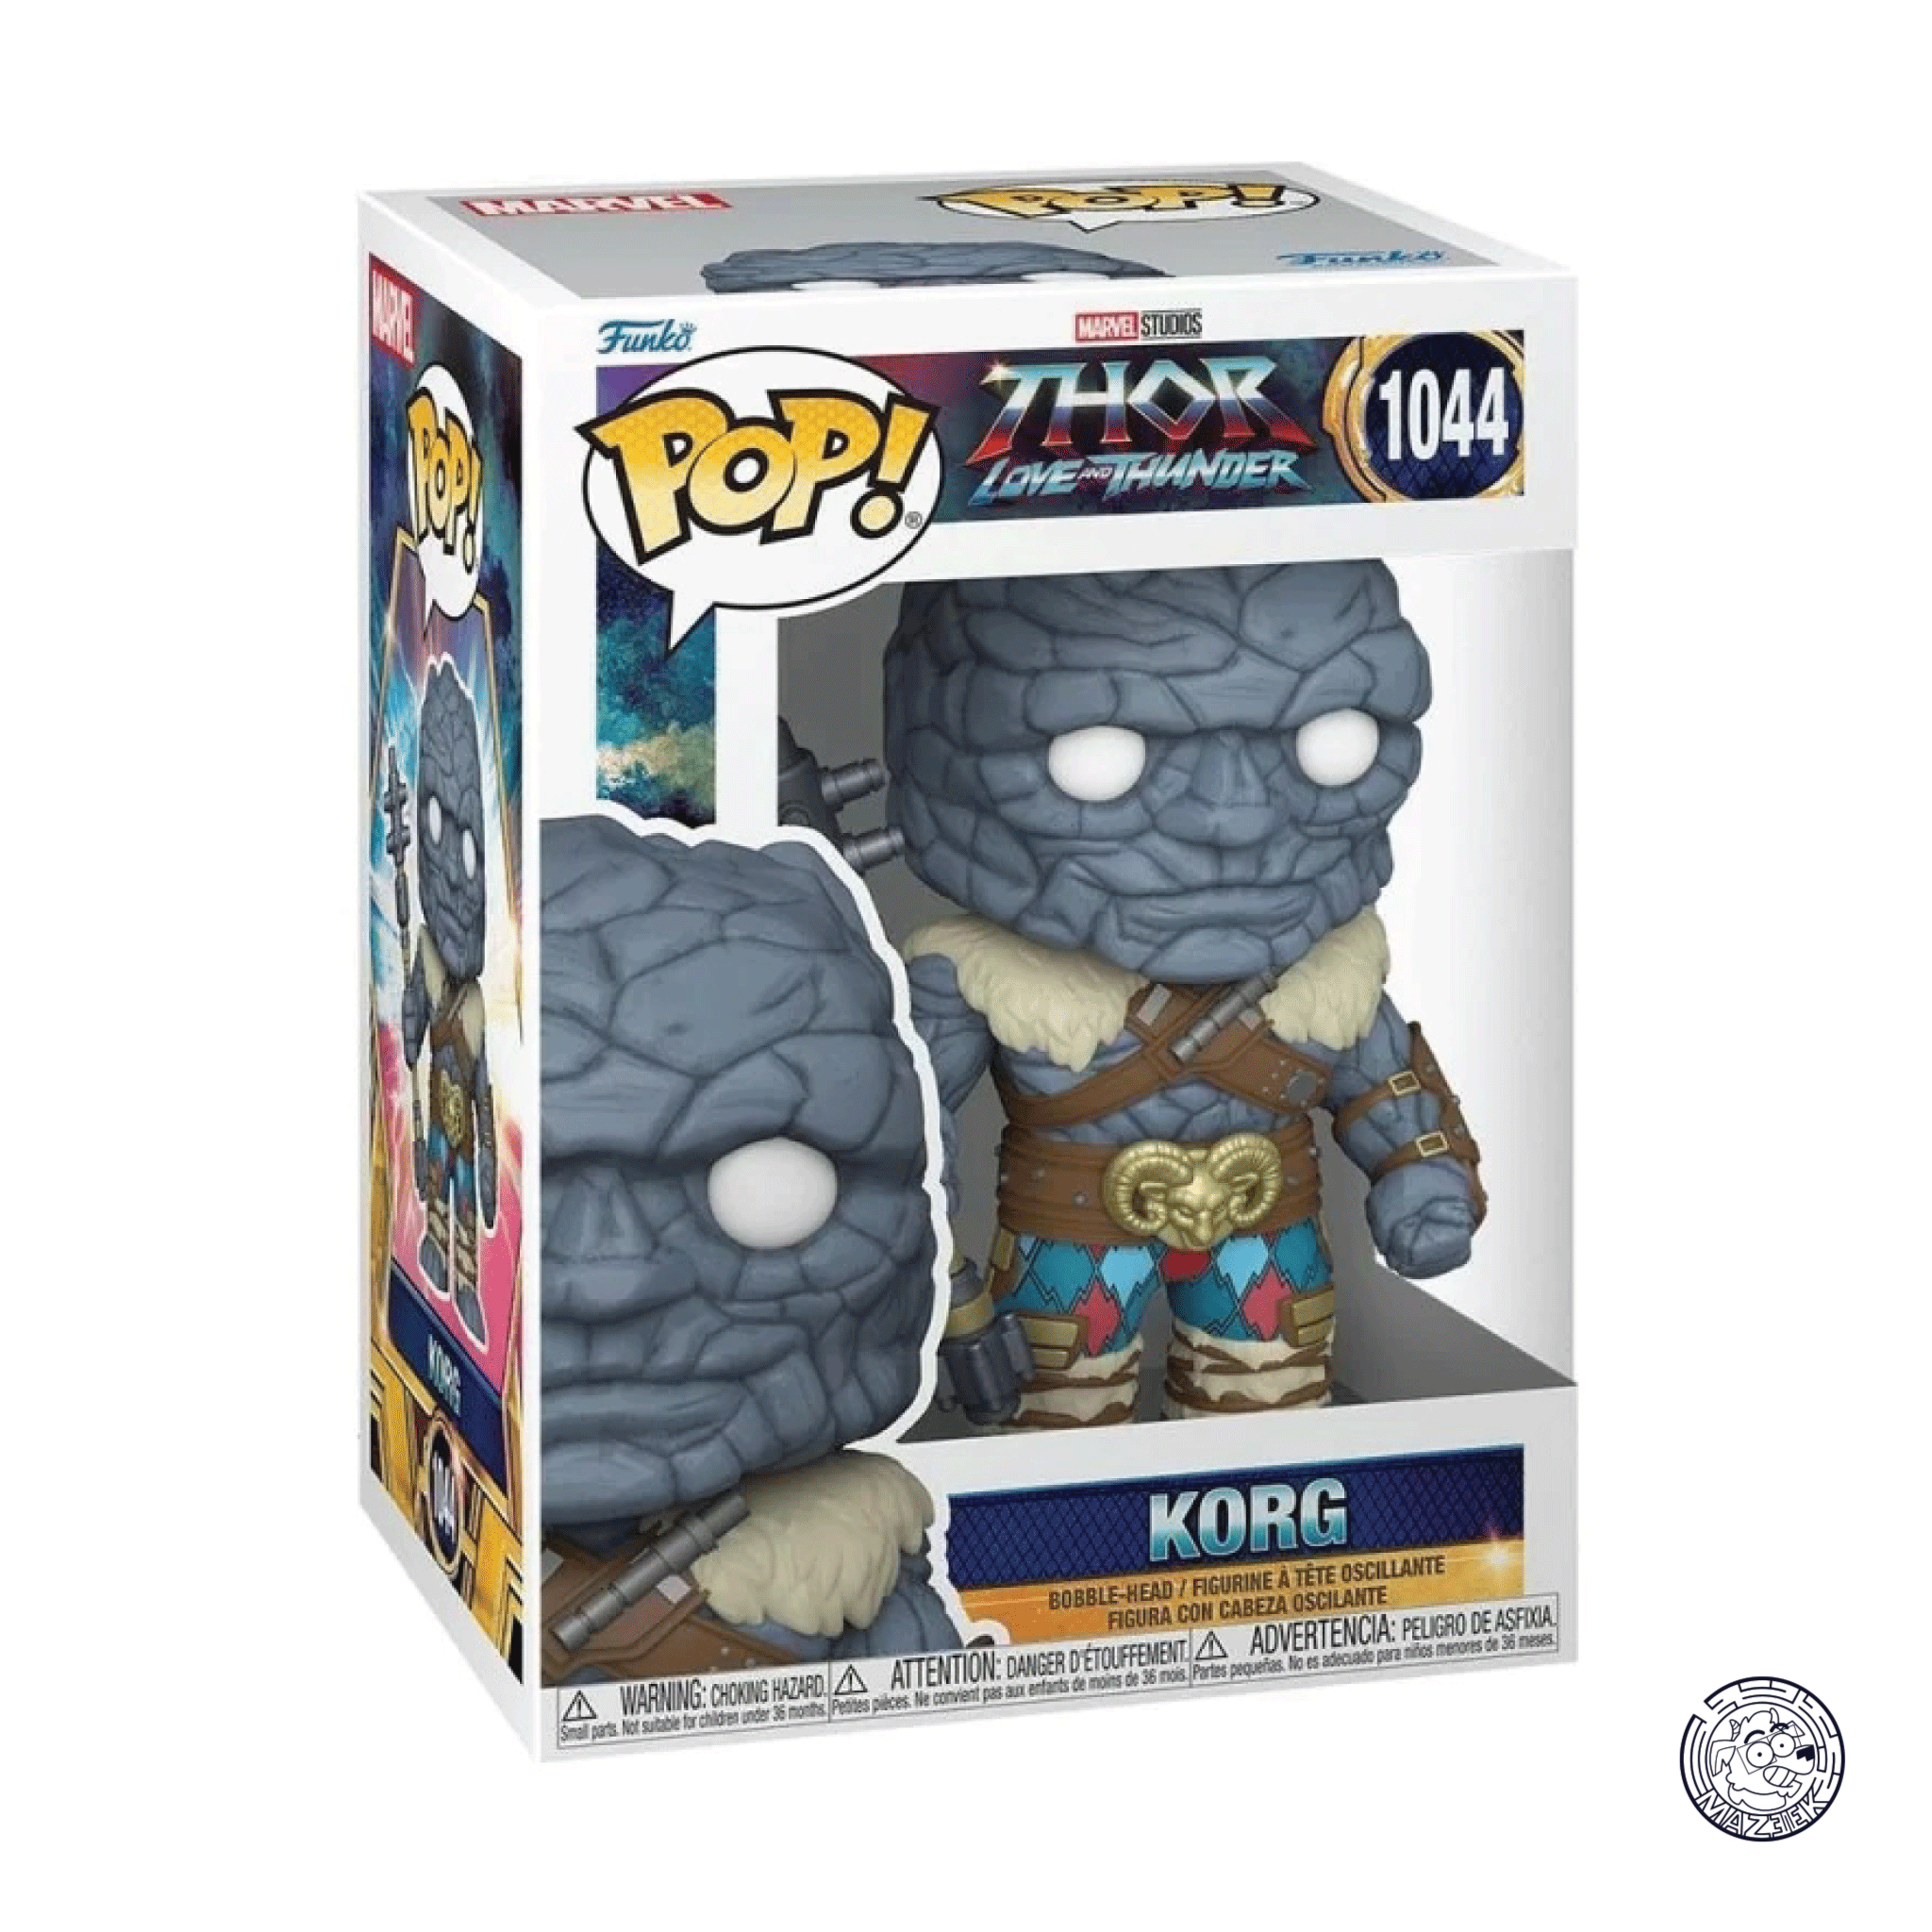 Funko POP! Thor Love and Thunder: Korg 1044